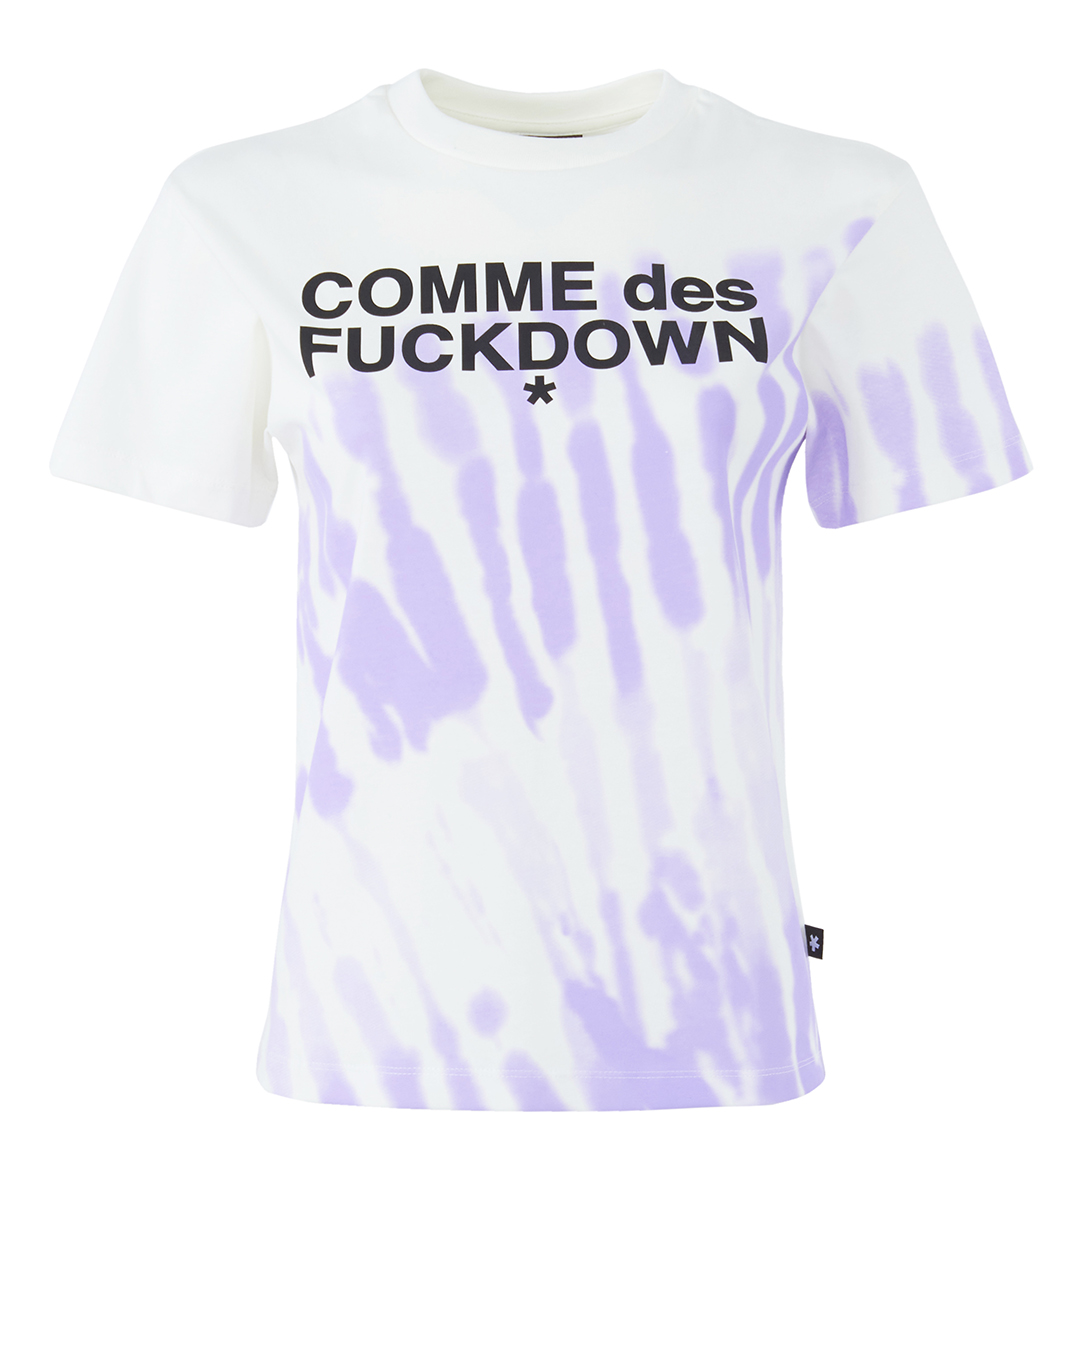 хлопковая футболка COMME des FUCKDOWN худи comme des fuckdown